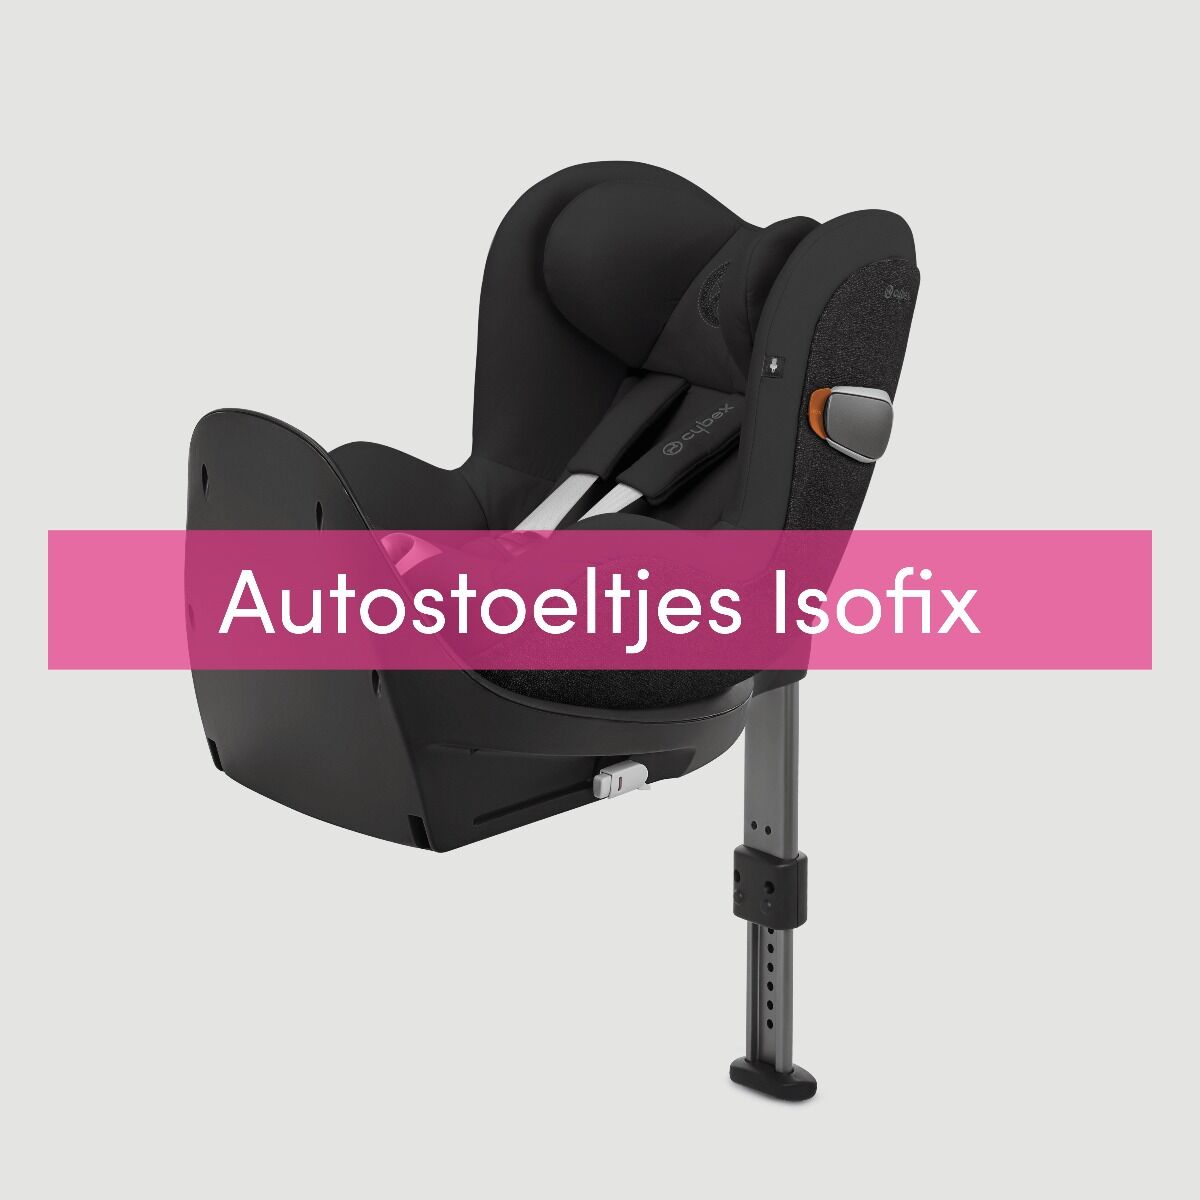 Autostoeltjes Isofix